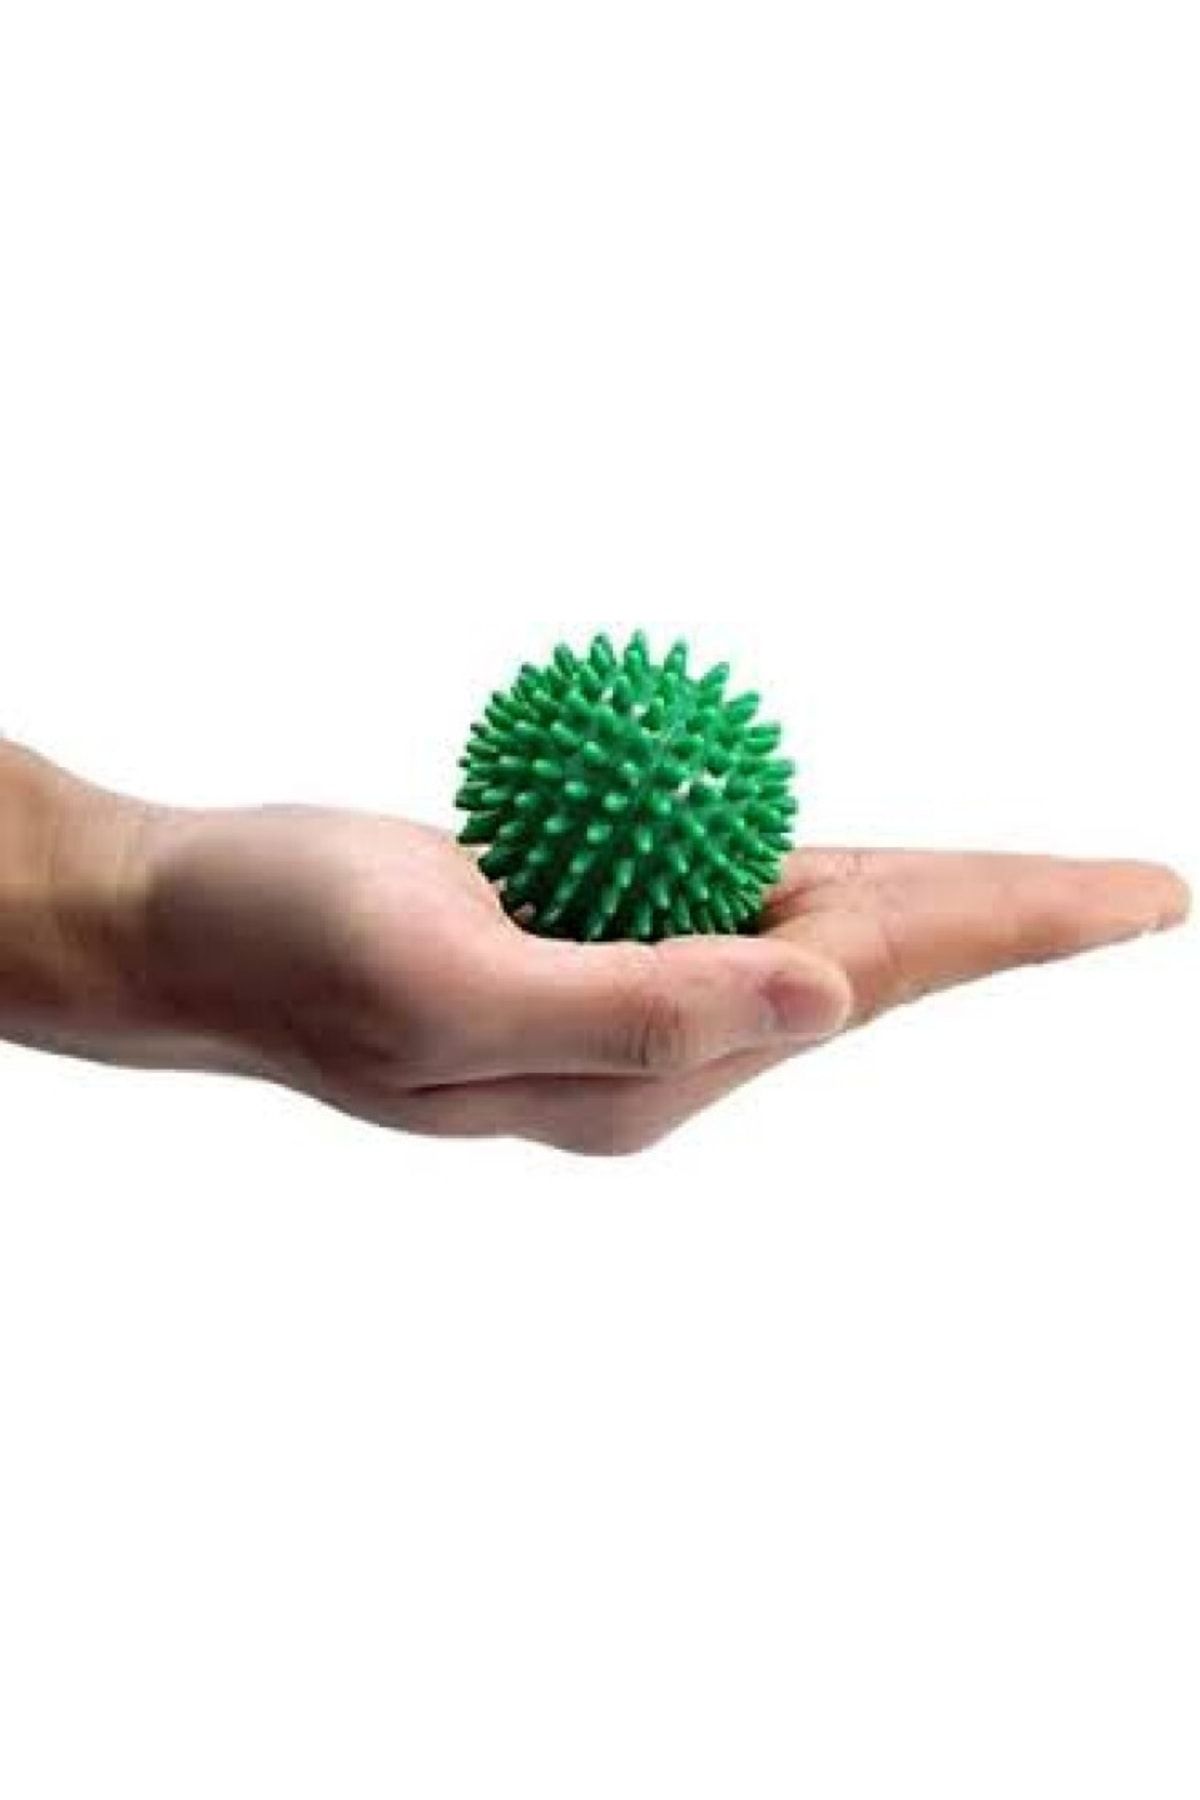 Kifidis Dikenli Masaj Topu Yeşil 7 Cm- Massage Ball